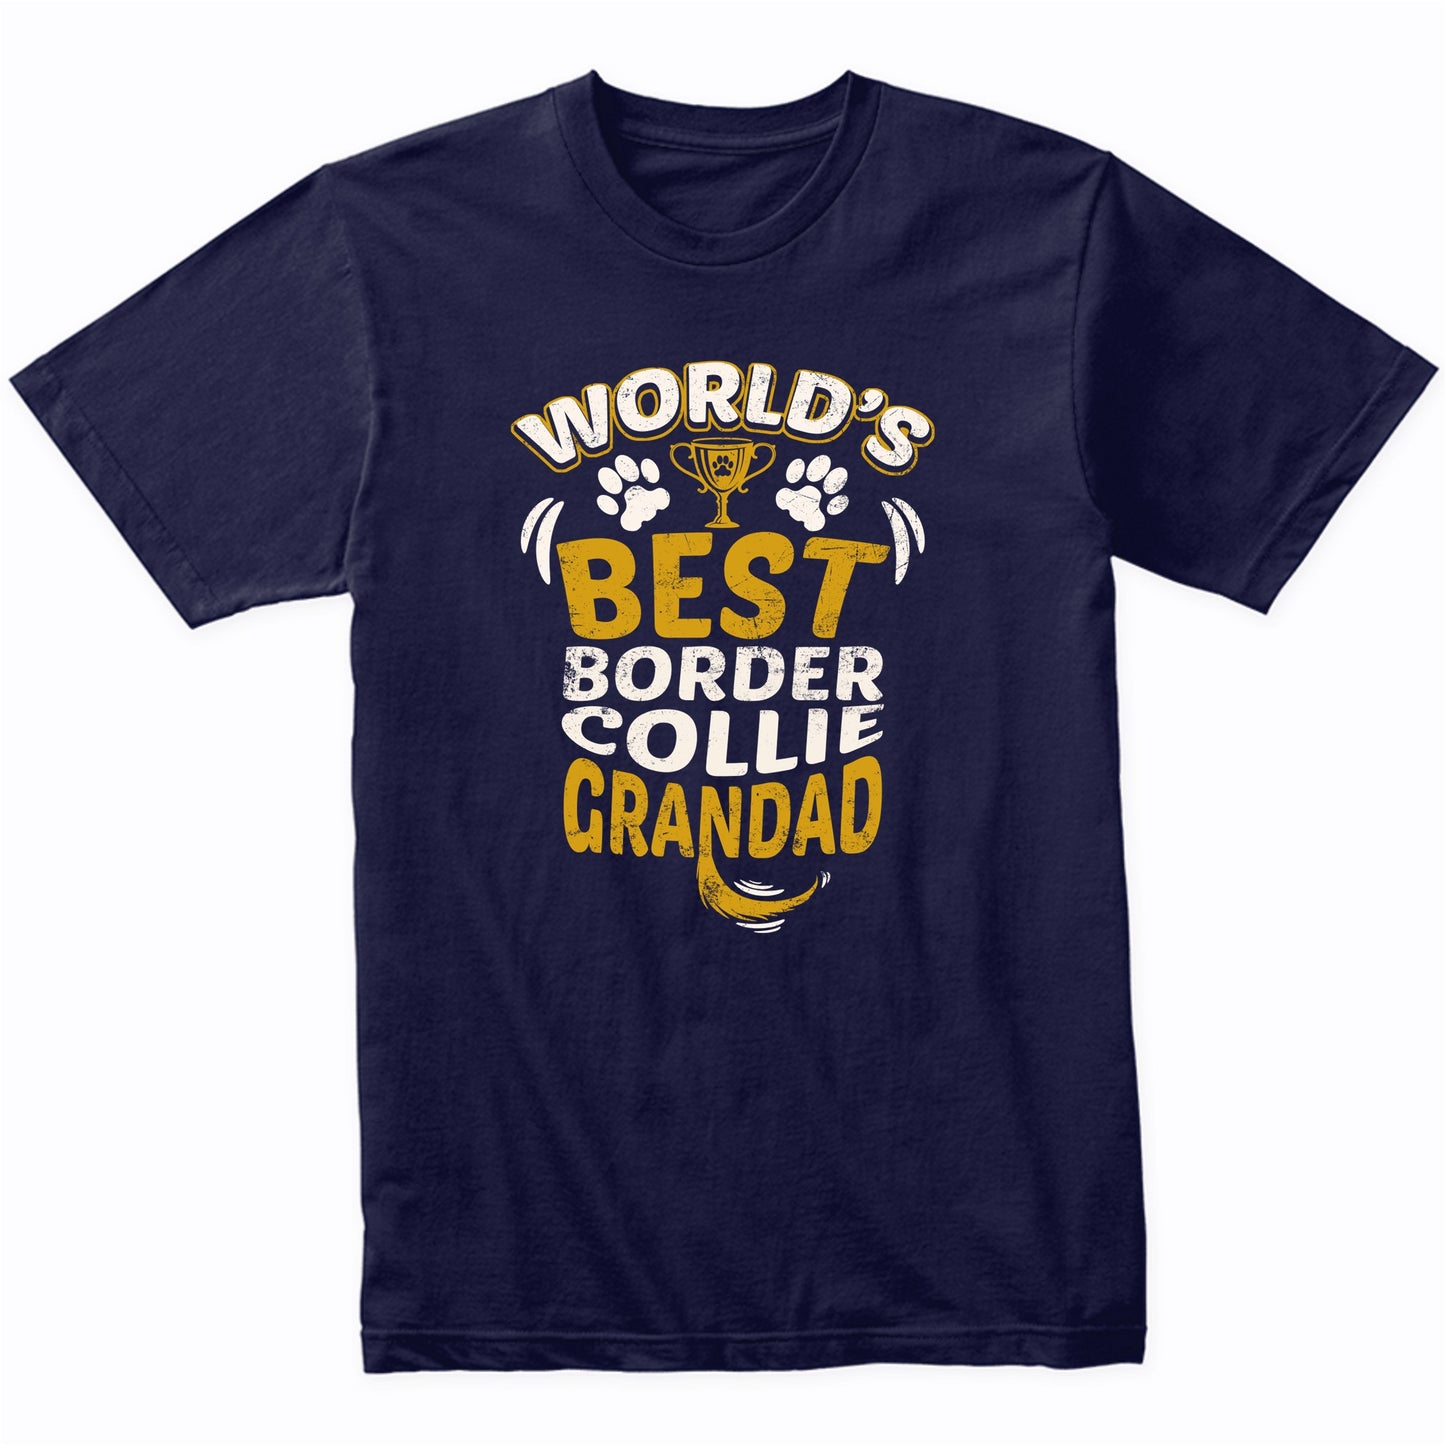 World's Best Border Collie Grandad Graphic T-Shirt